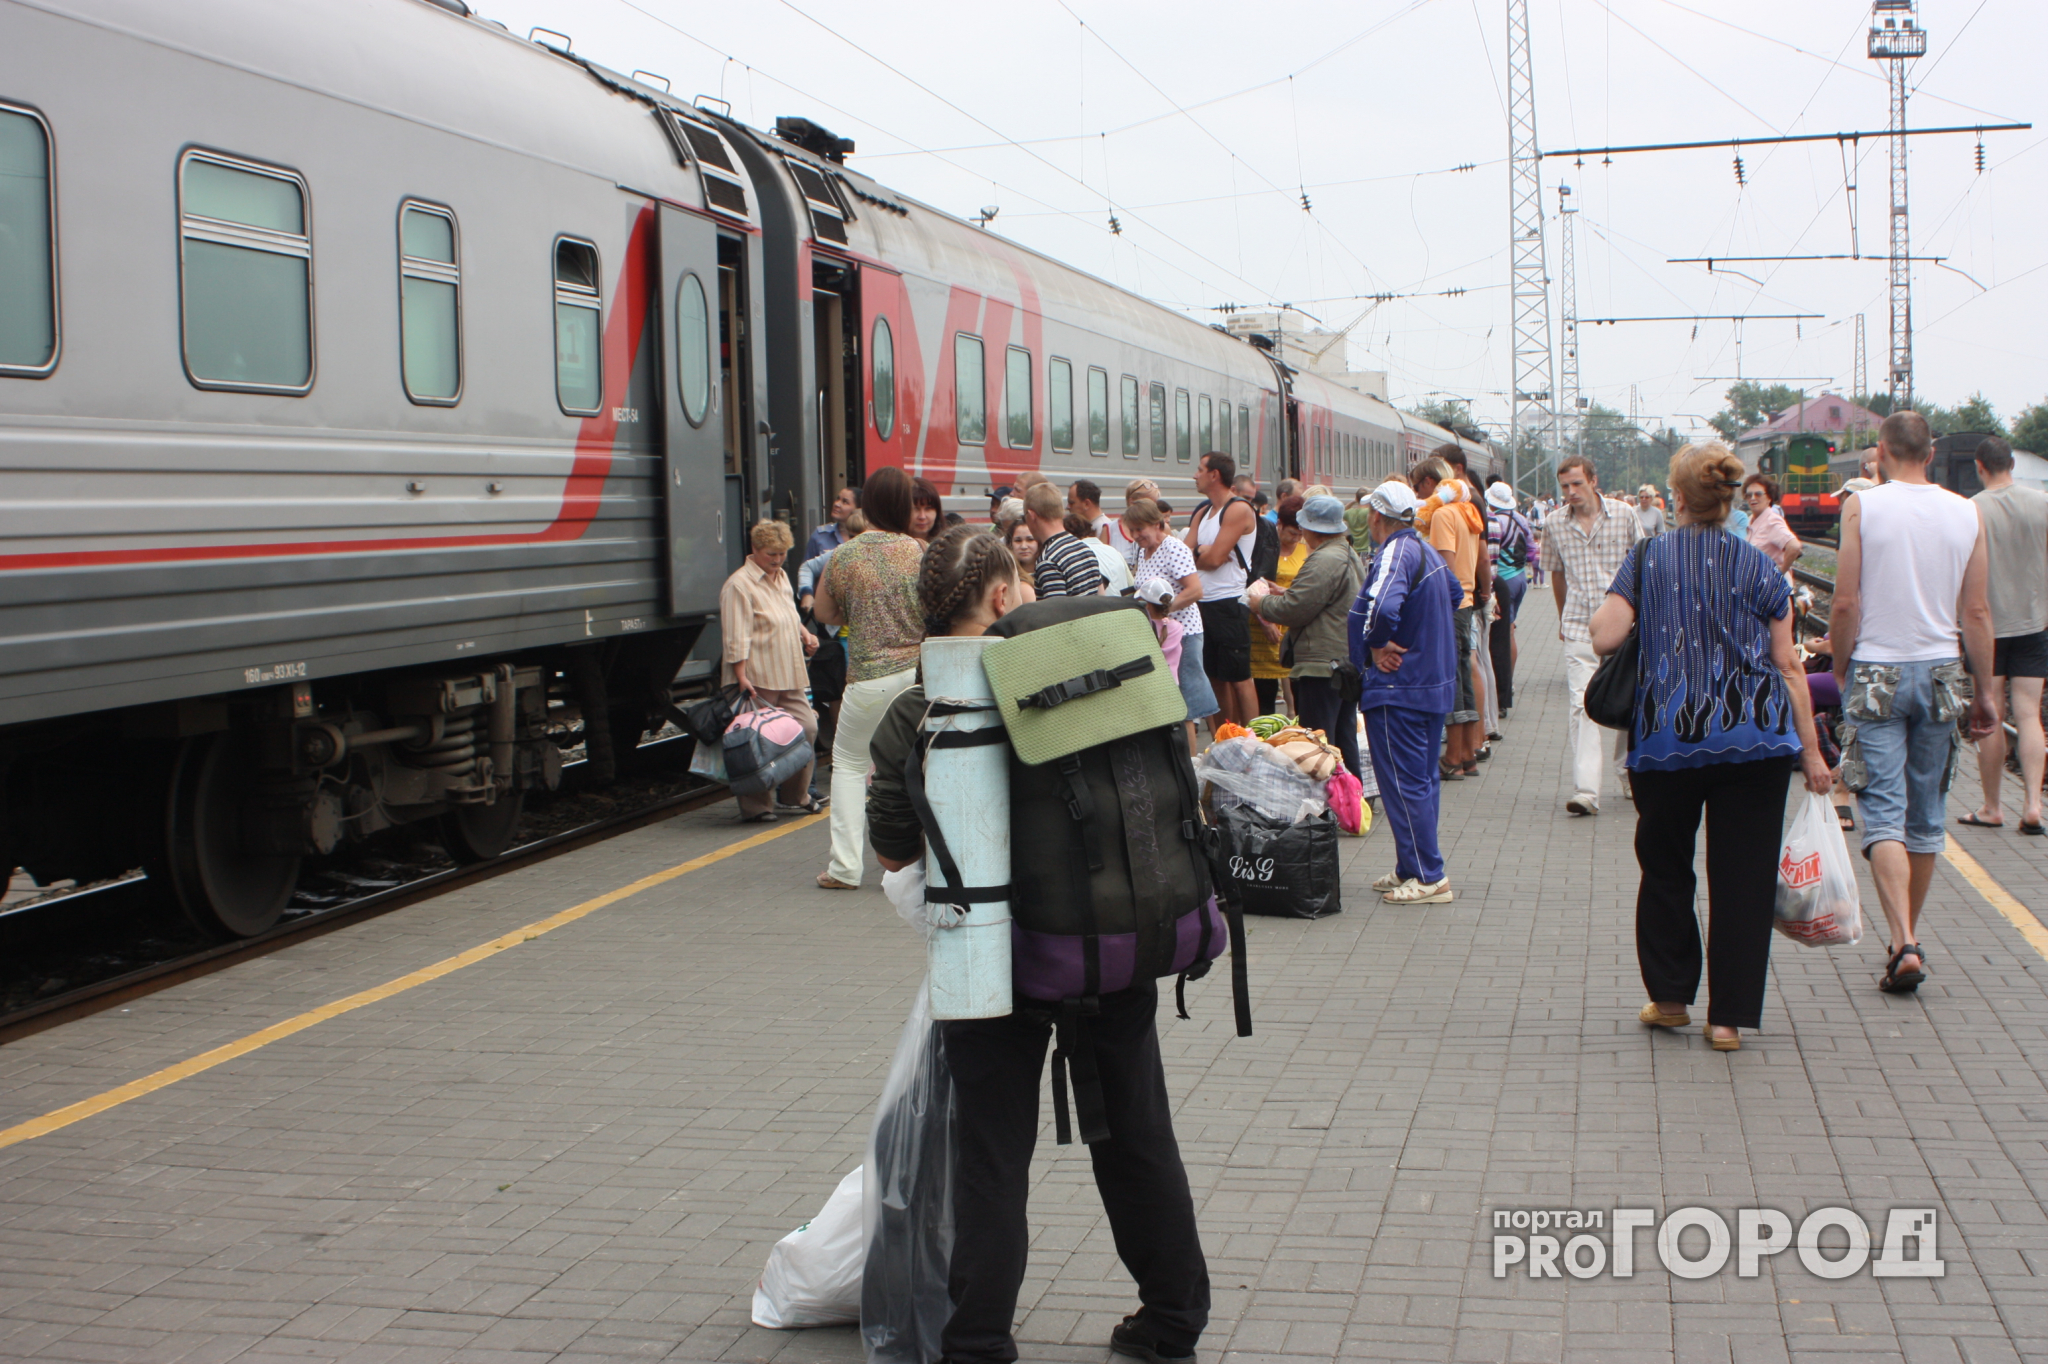 Нижний Новгород стал одним из самых популярных туристических городов